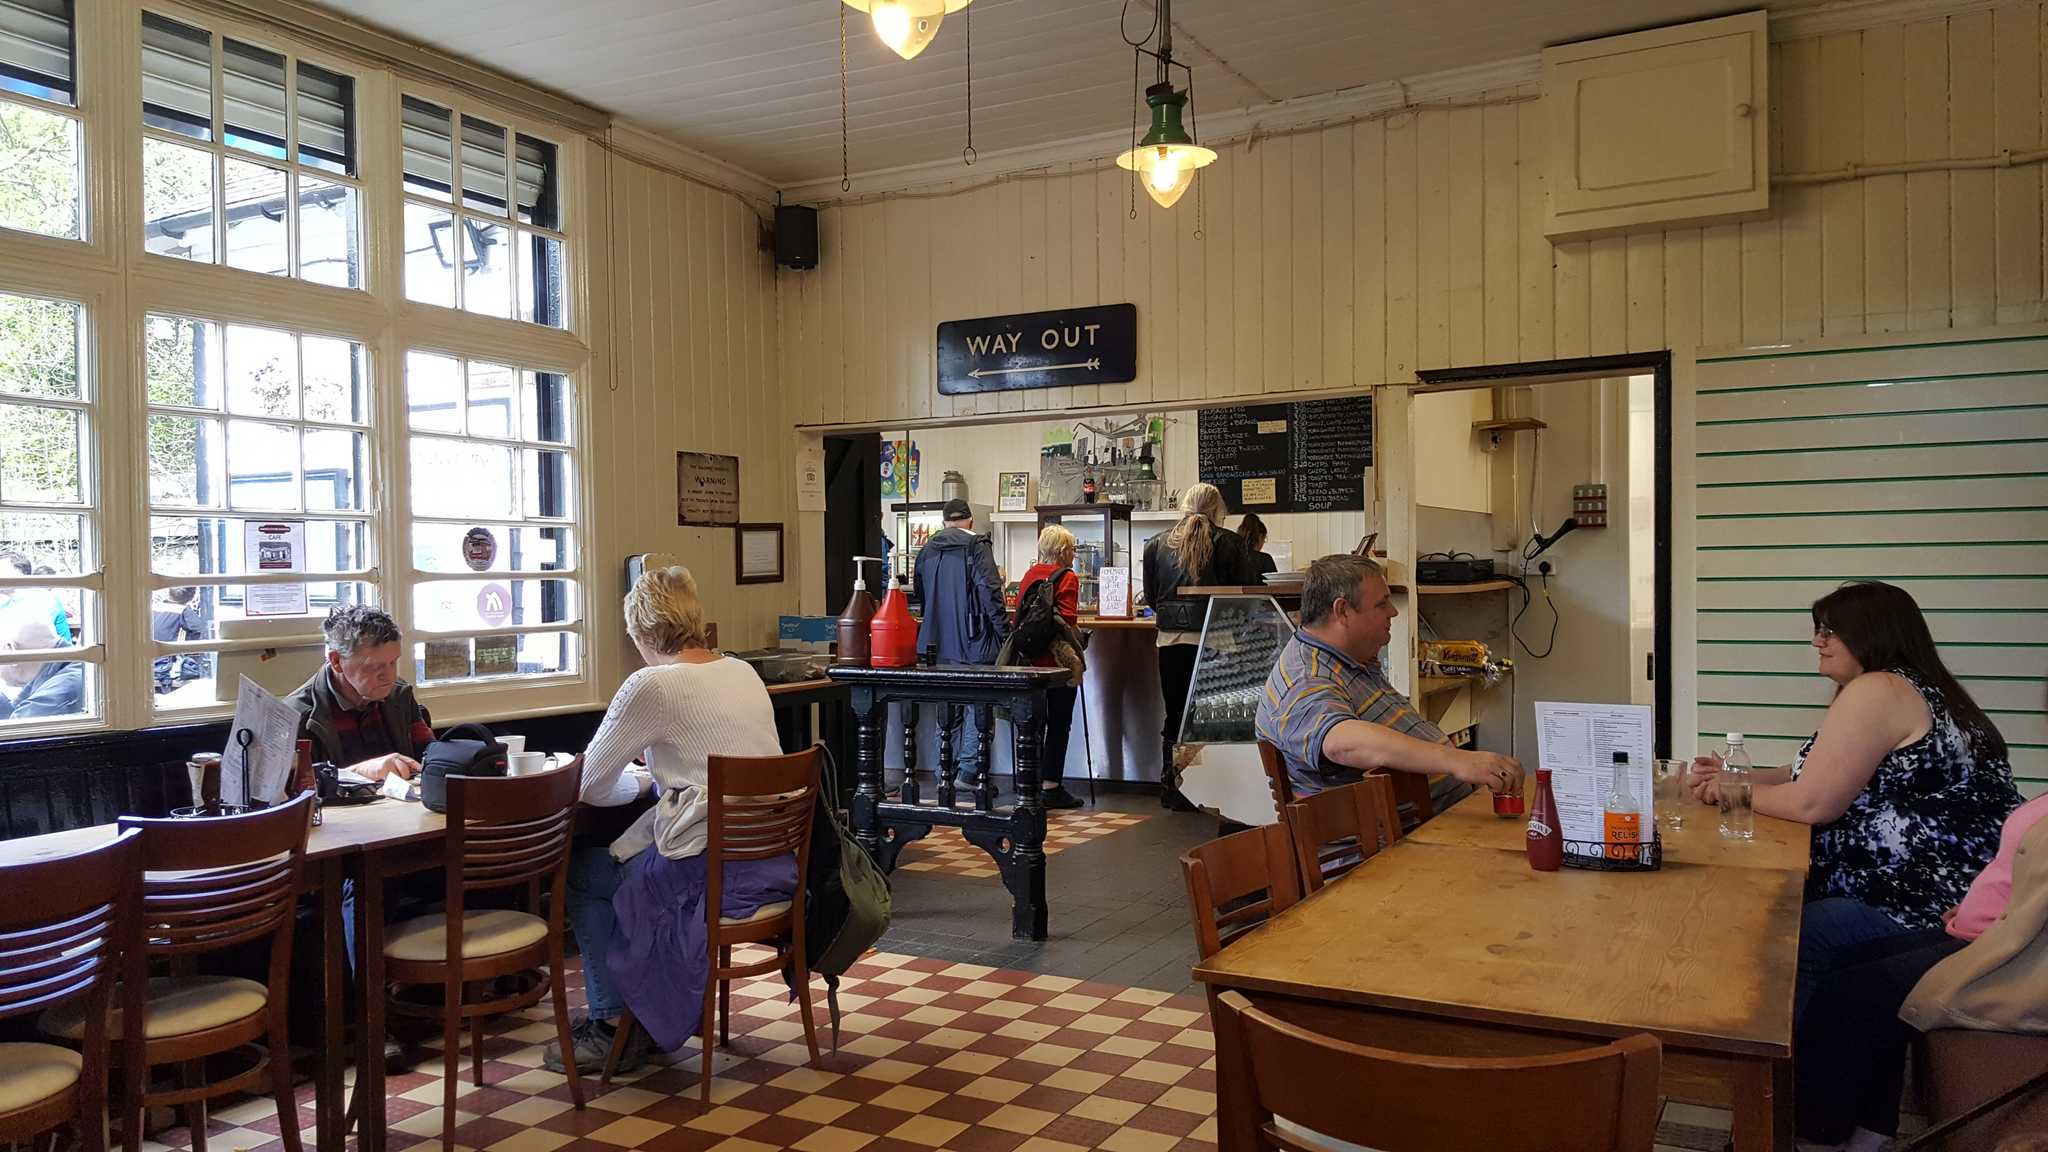 Grindleford station cafe